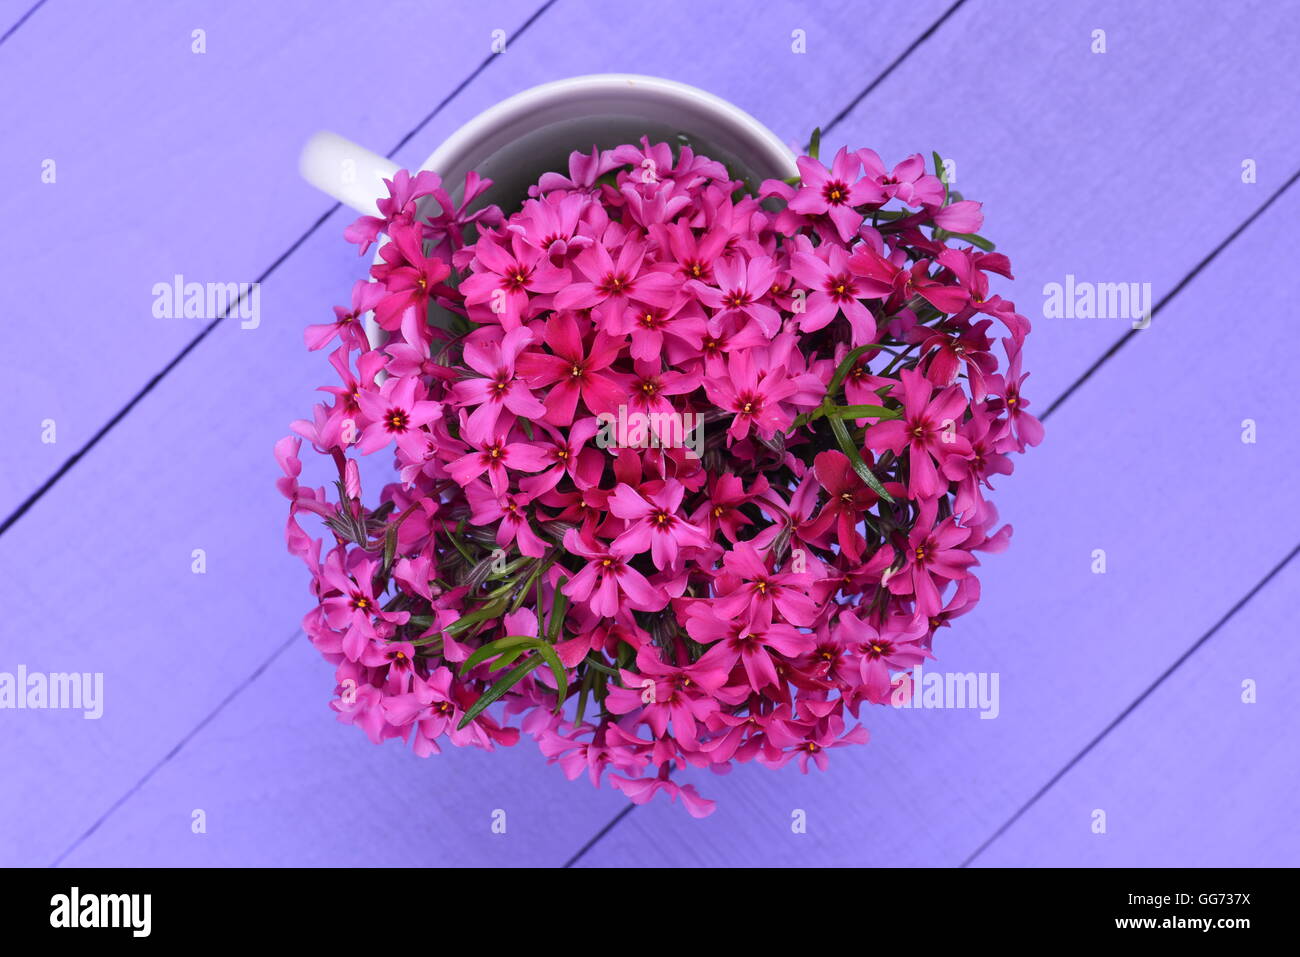 Bouquet de fleurs de printemps rose sur planche de bois Vue de dessus Banque D'Images